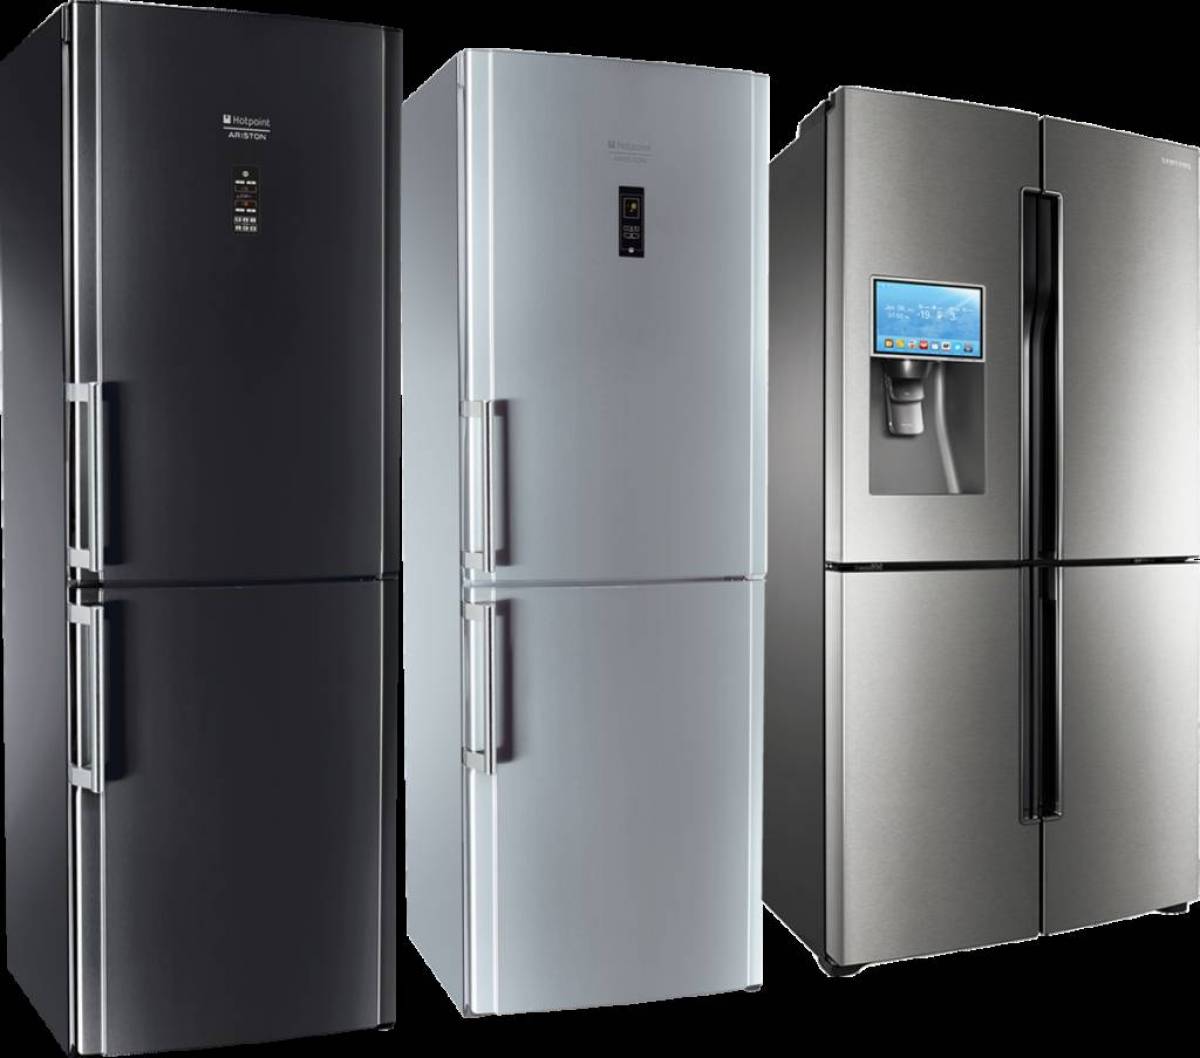 Купить холодильник в алматы. Холодильник Whirlpool WTNF 923 X. Холодильник Haier cef537awg. Холодильник многодверный Haier a3fe742cgbjru. Холодильник Samsung rf905qblaxw.